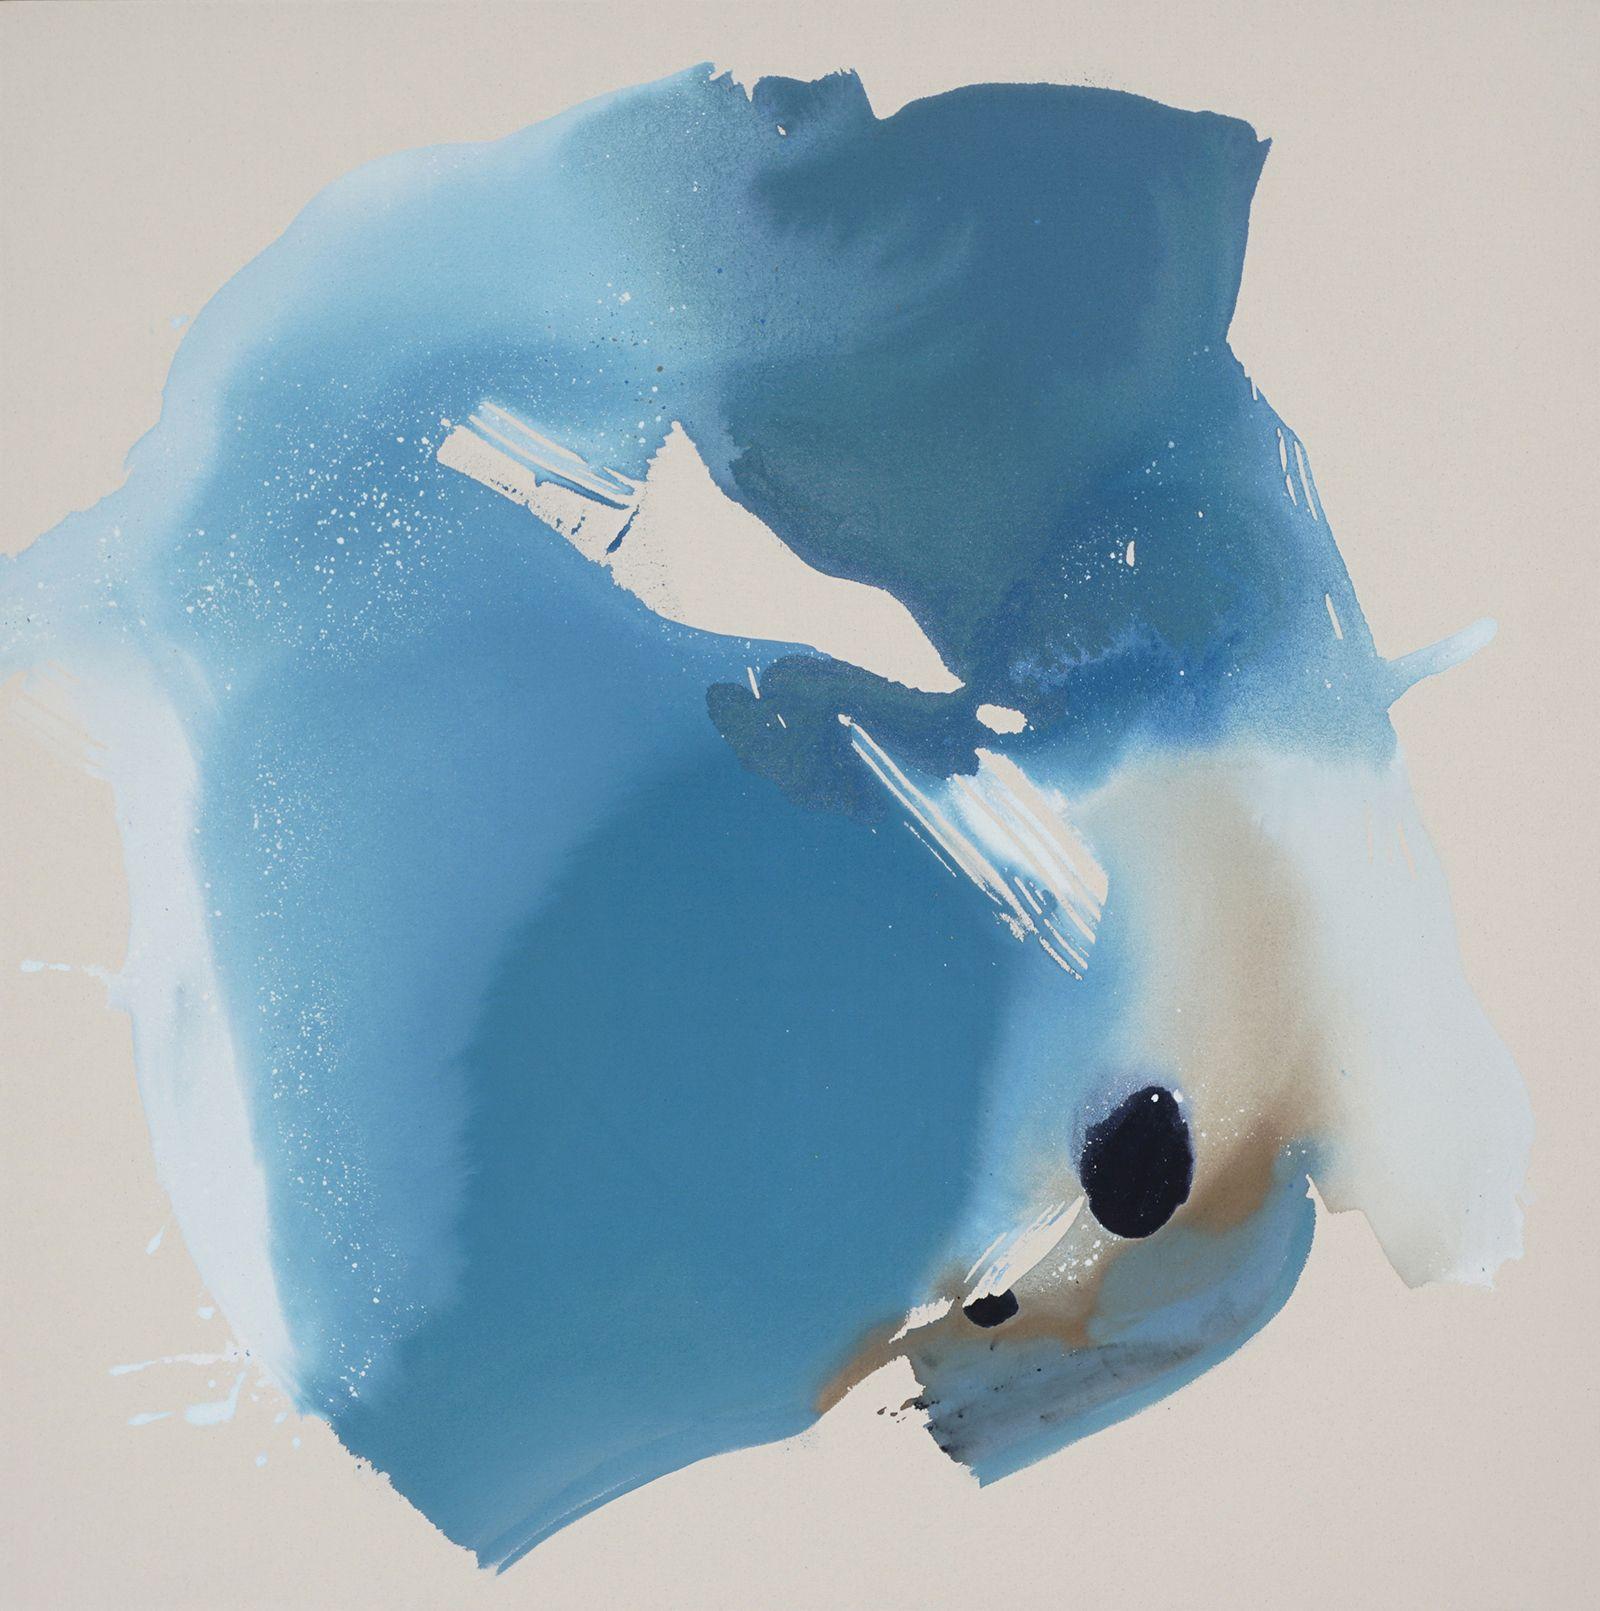 Abstract Painting Lauren Adams - Bord de mer tourbillonnant, peinture, acrylique sur toile